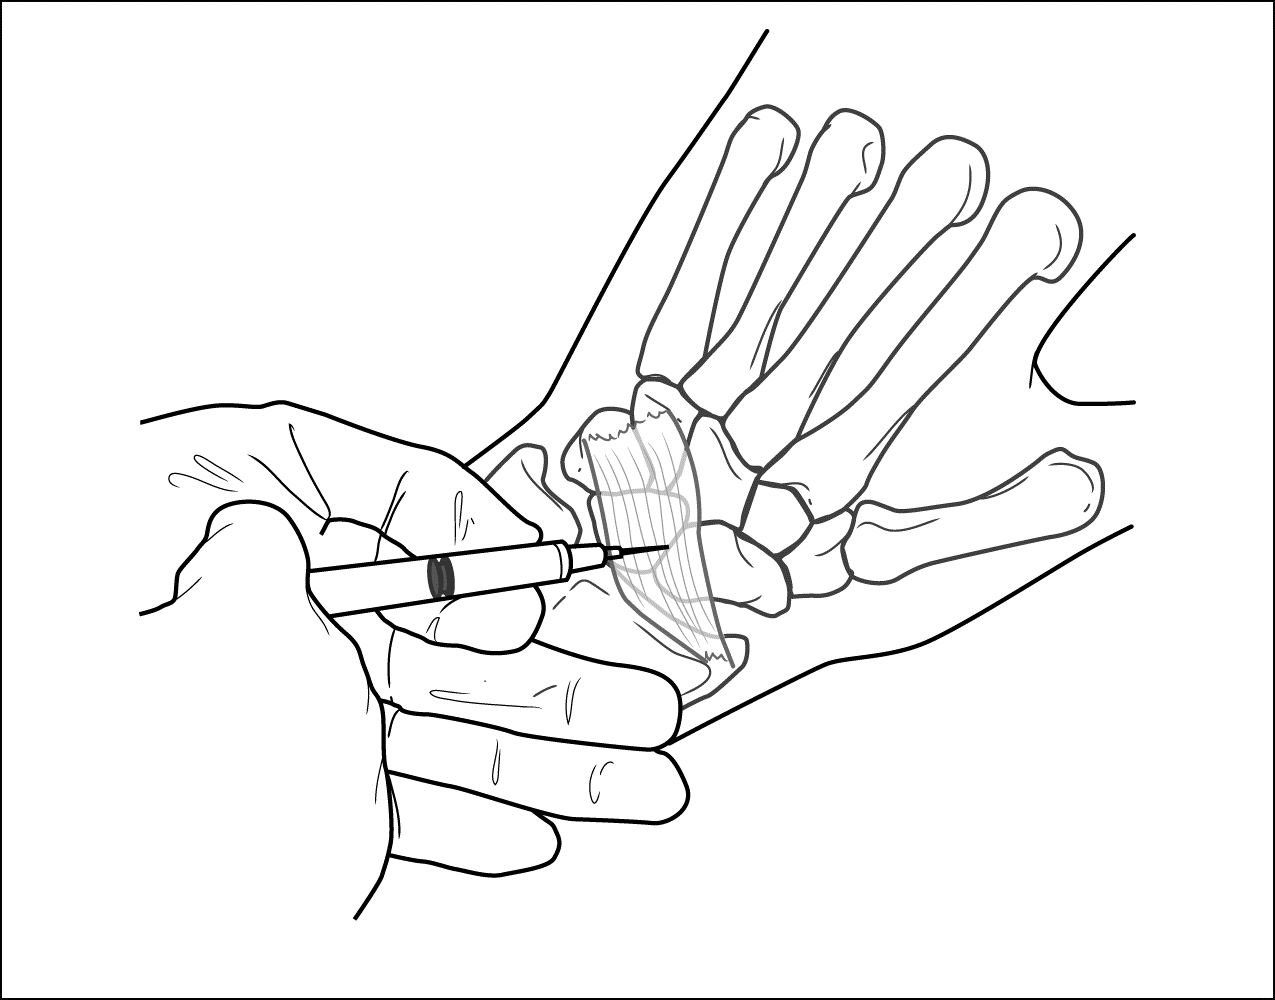 腕关节注射术步骤图片